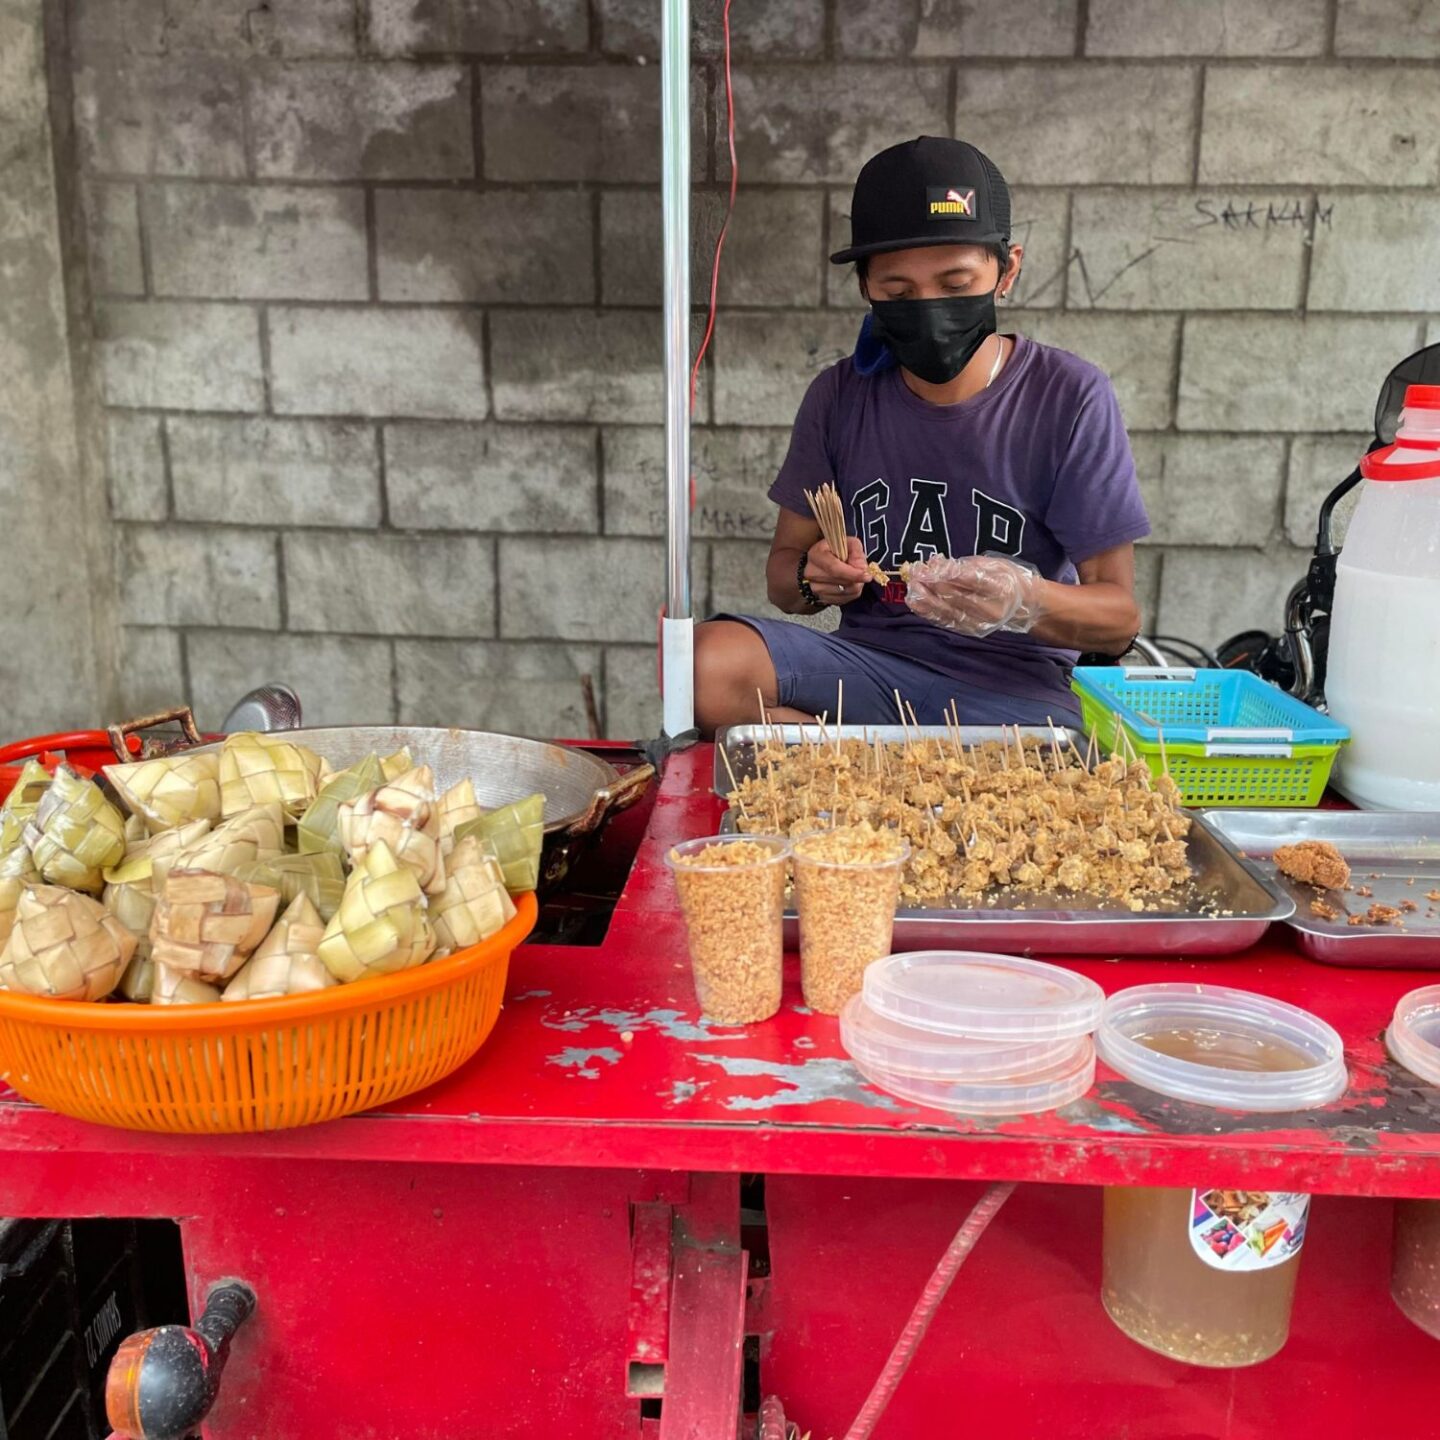 Proben street food vendor cagayan de oro city